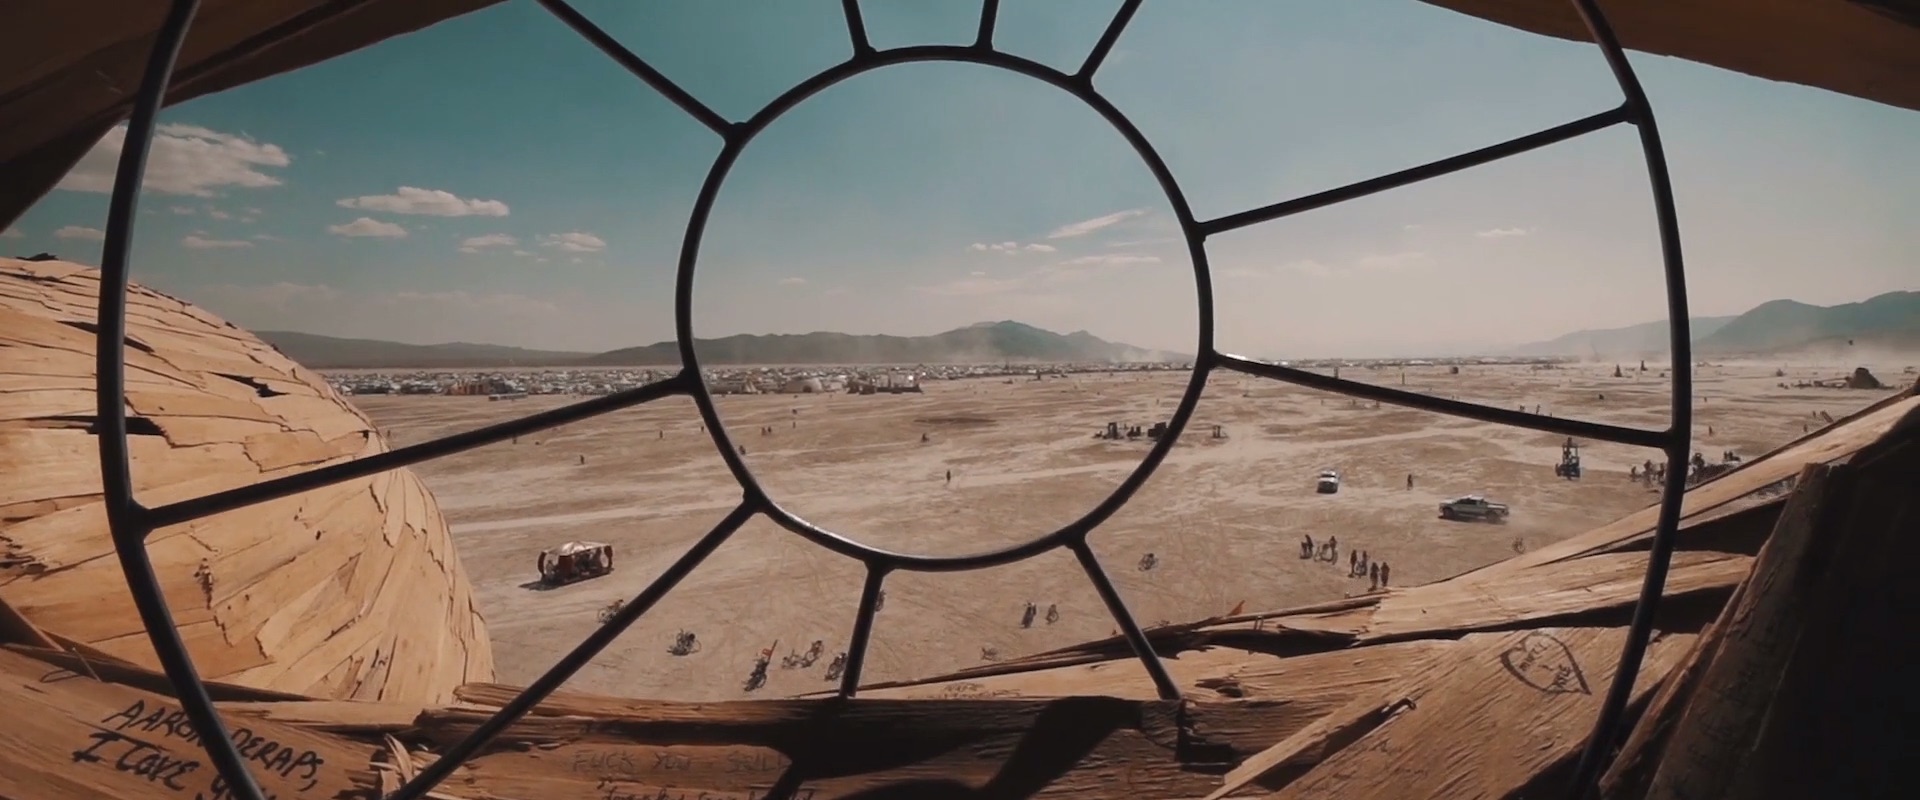 Art of Burning Man 2014_7